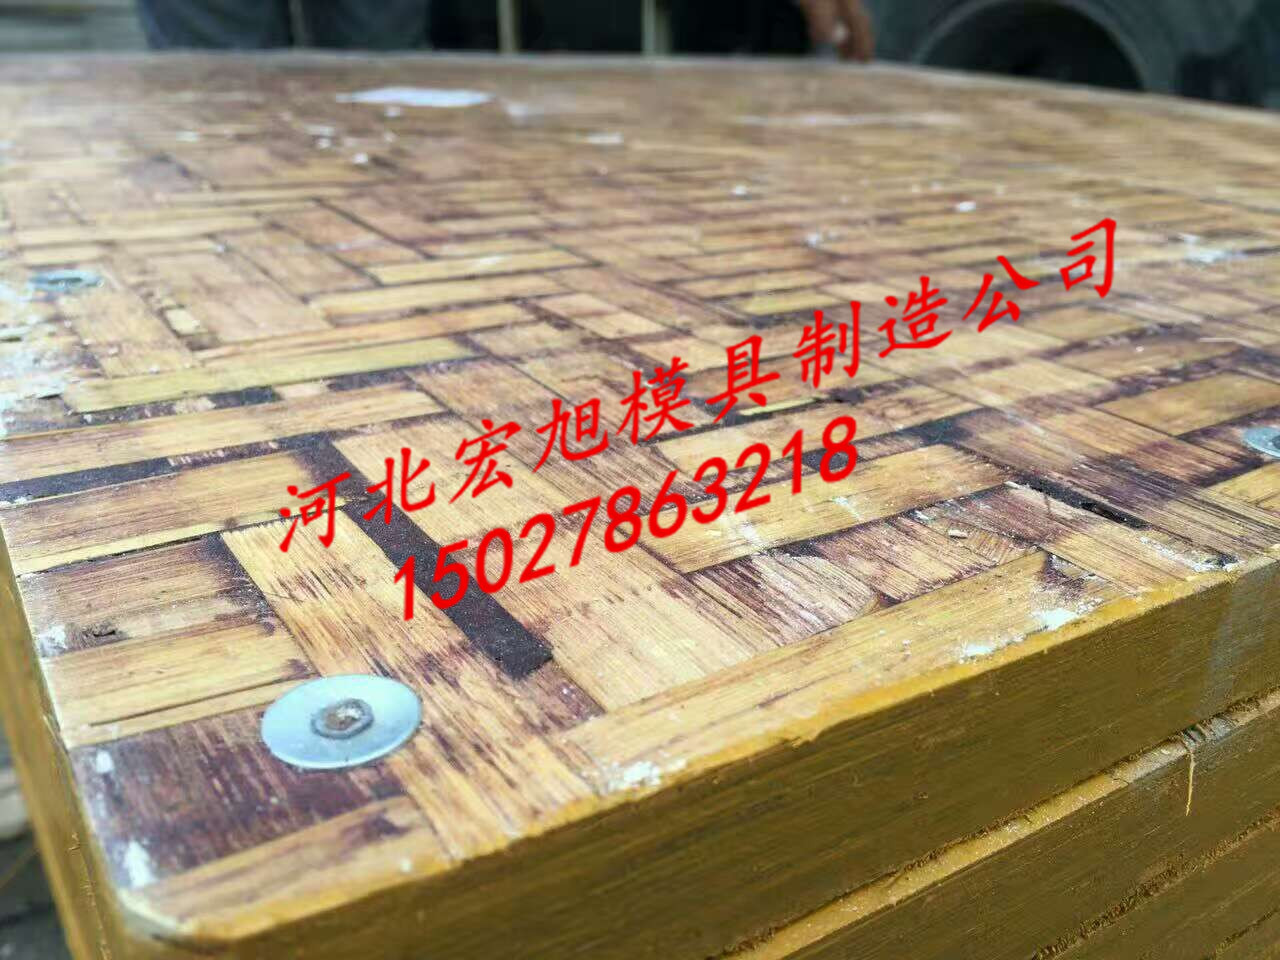 贵州省pvc托板质量 贵州省pvc塑料免烧砖托板厂家 贵州省耐酸碱pvc塑料板材料